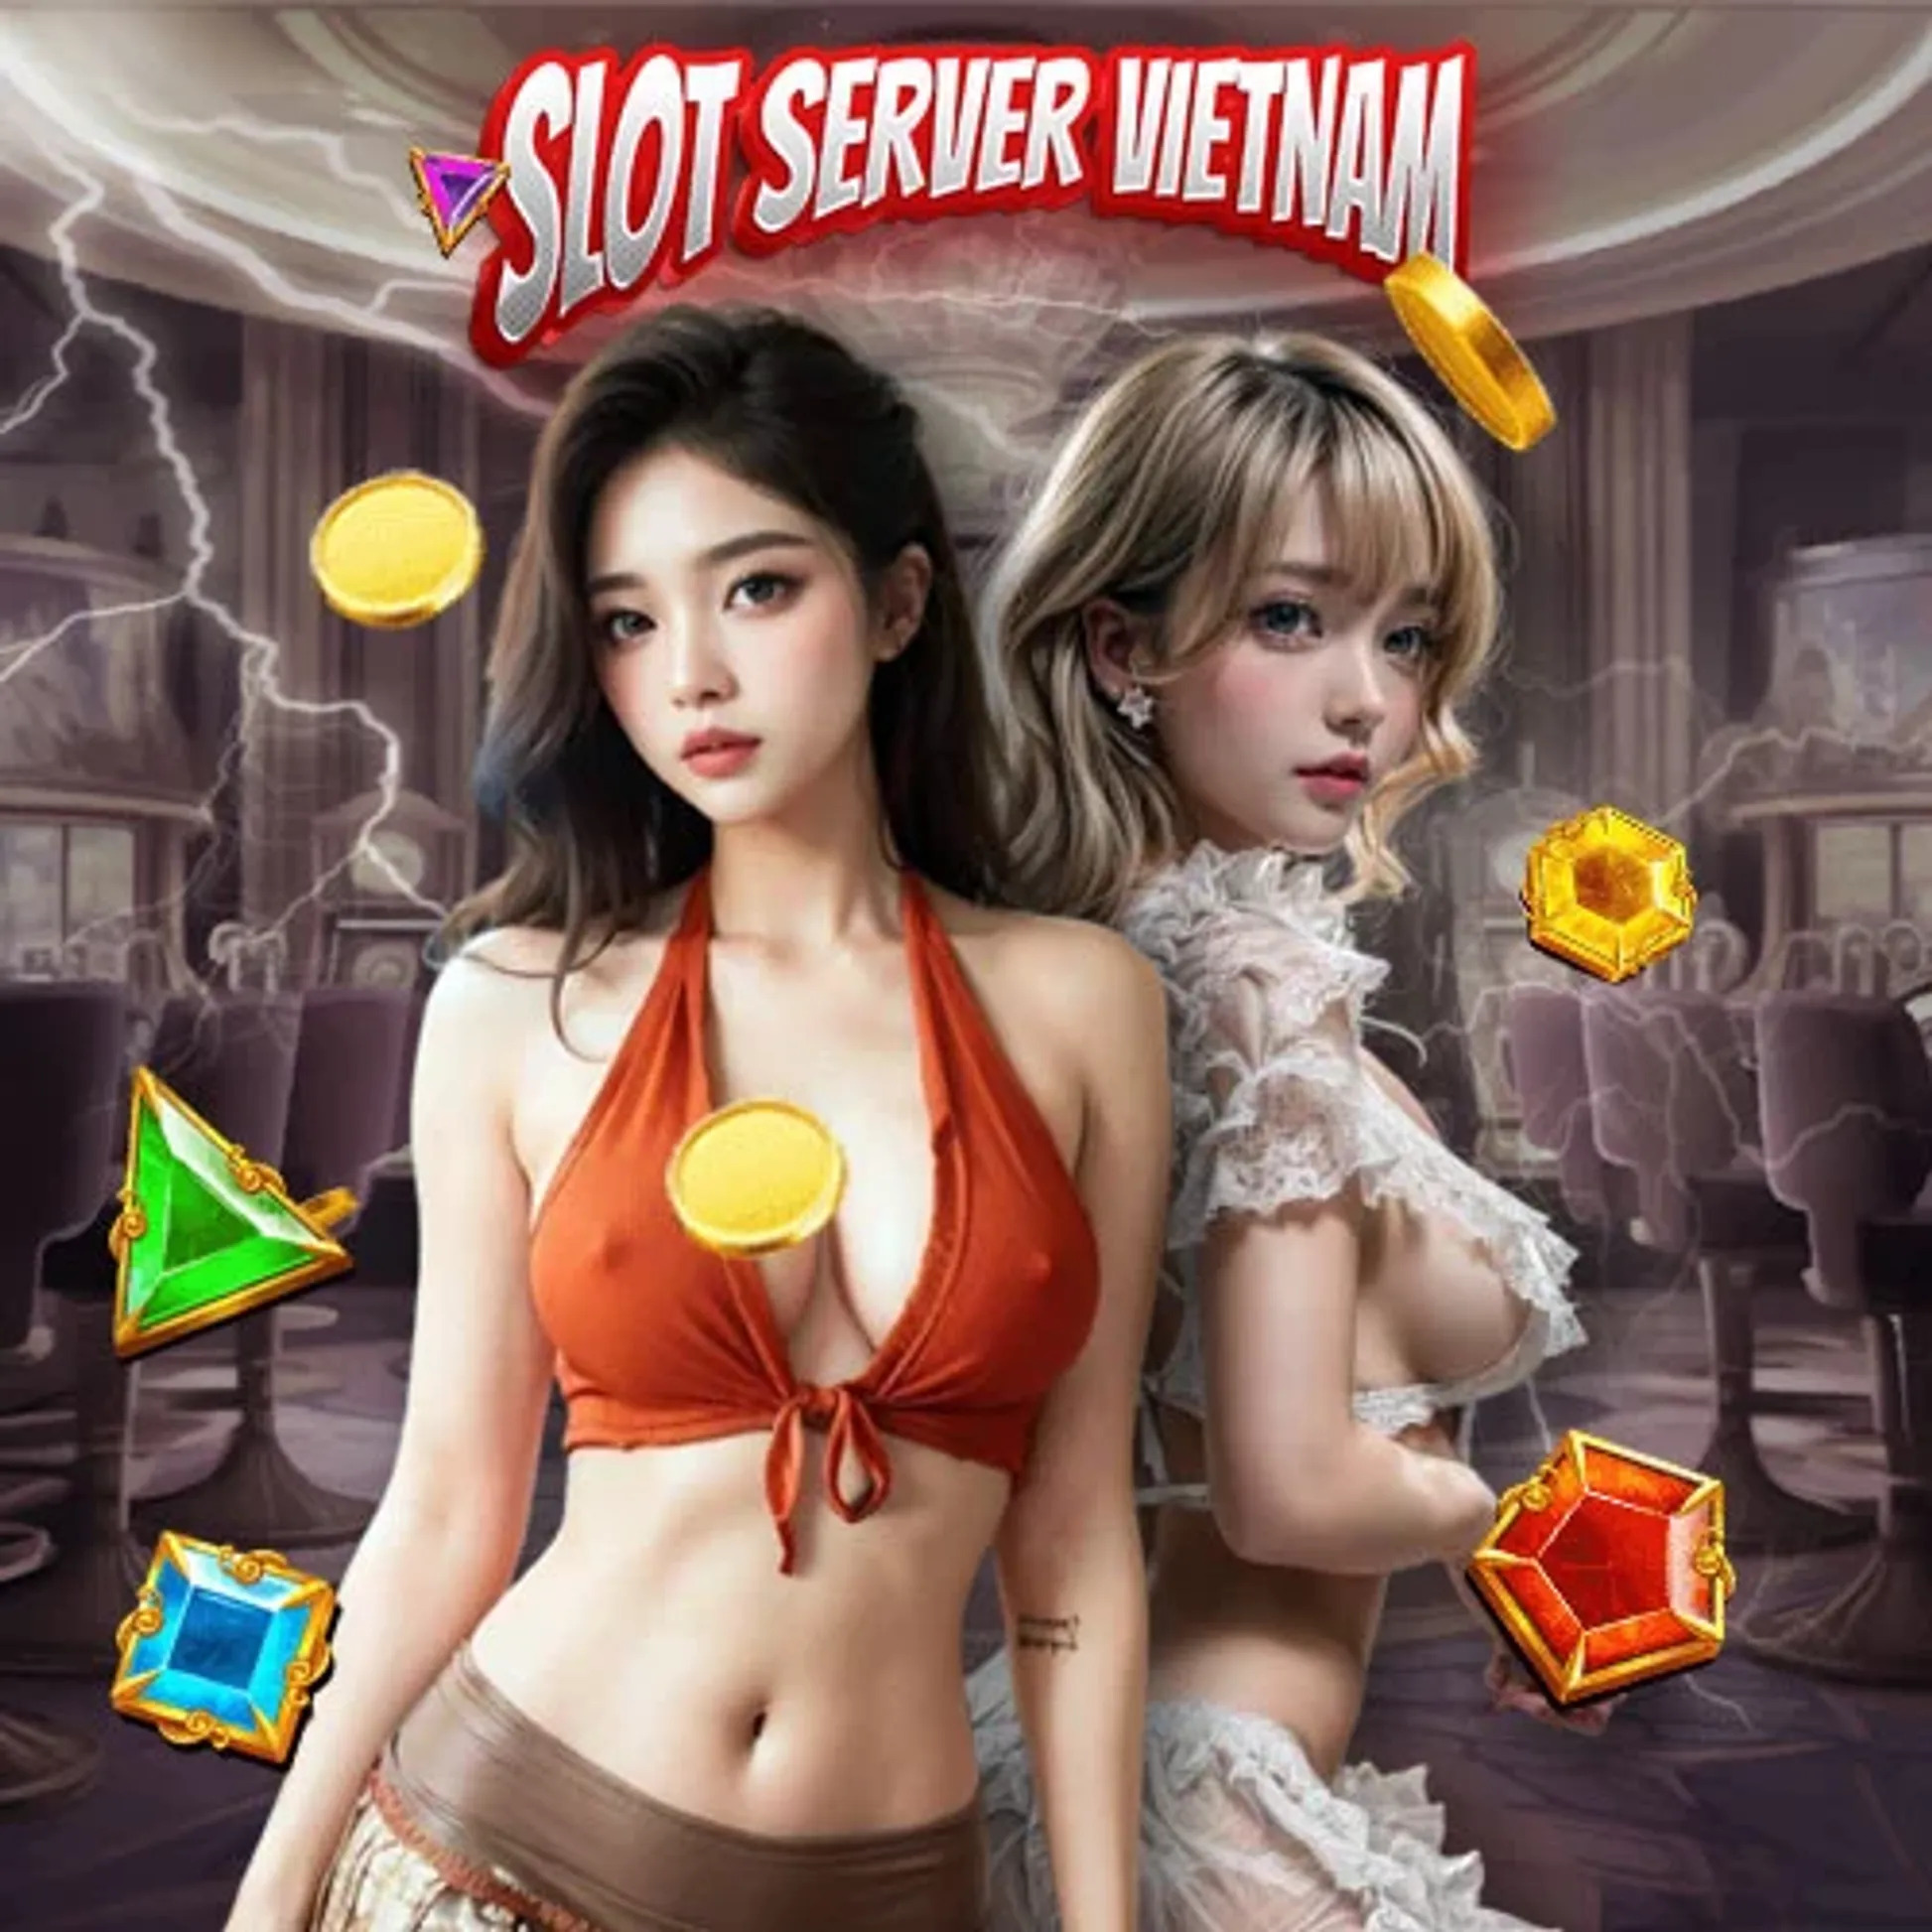 Menuju Kemenangan Besar dengan Akun Pro Vietnam dan Slot777 Thailand di Situs Olympus 1000